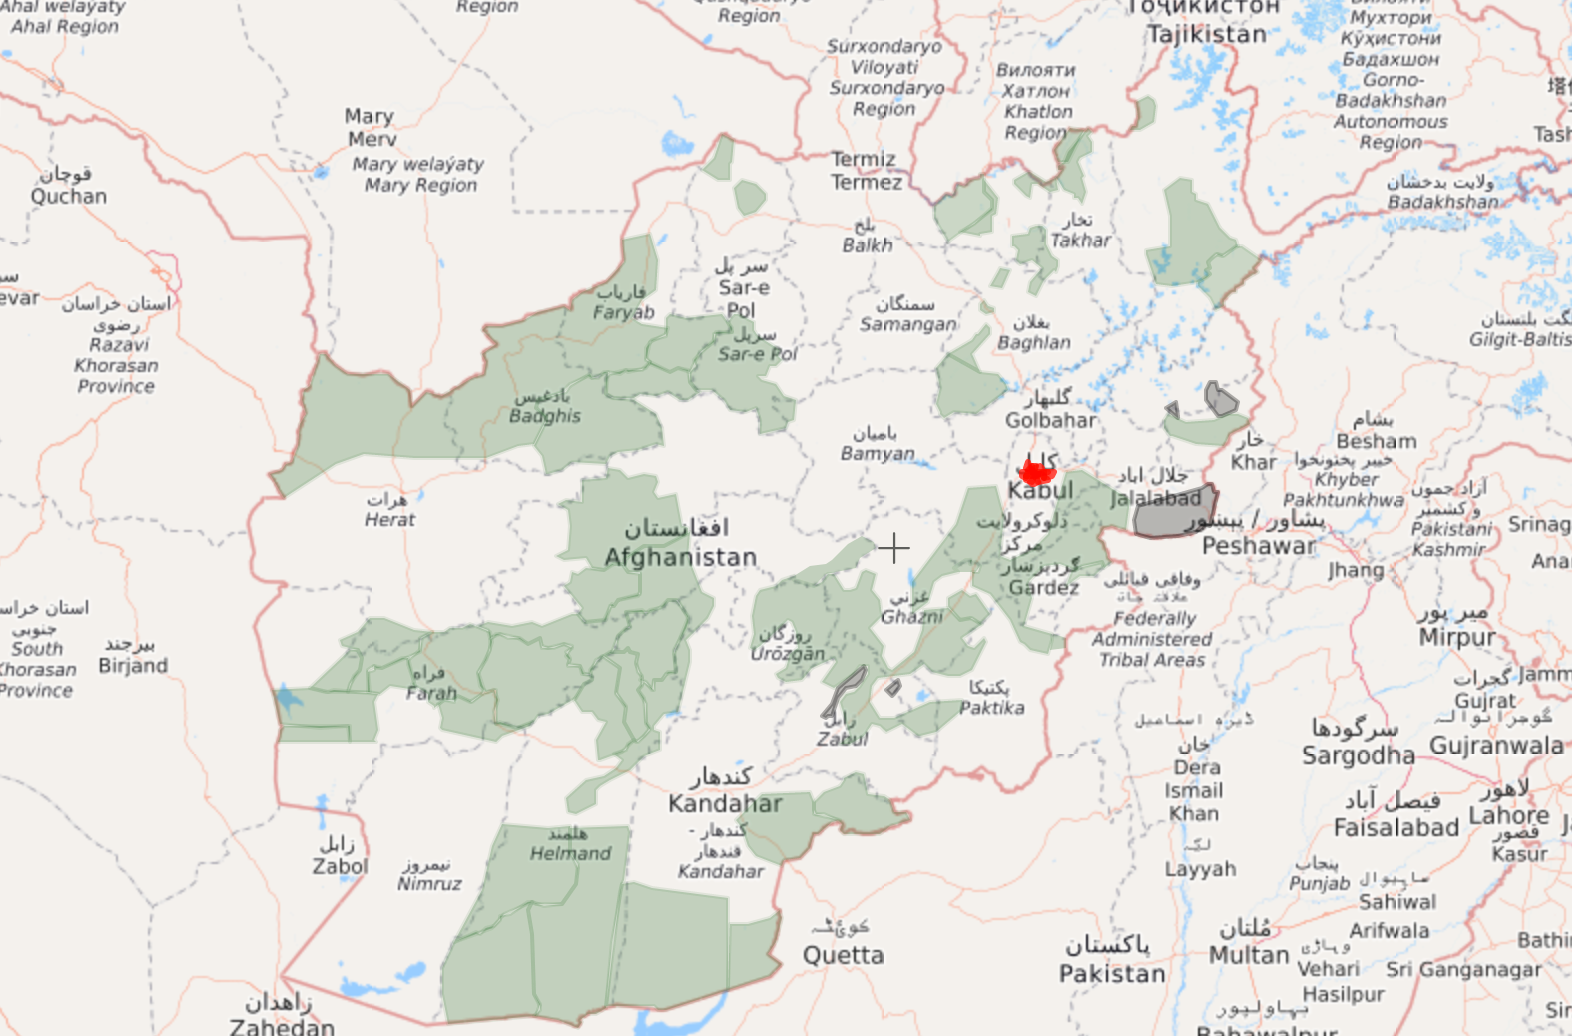 Lysegrønne felt er områder med sterk Taliban-innflytelse. Grå felt er områder med IS-innflytelse.